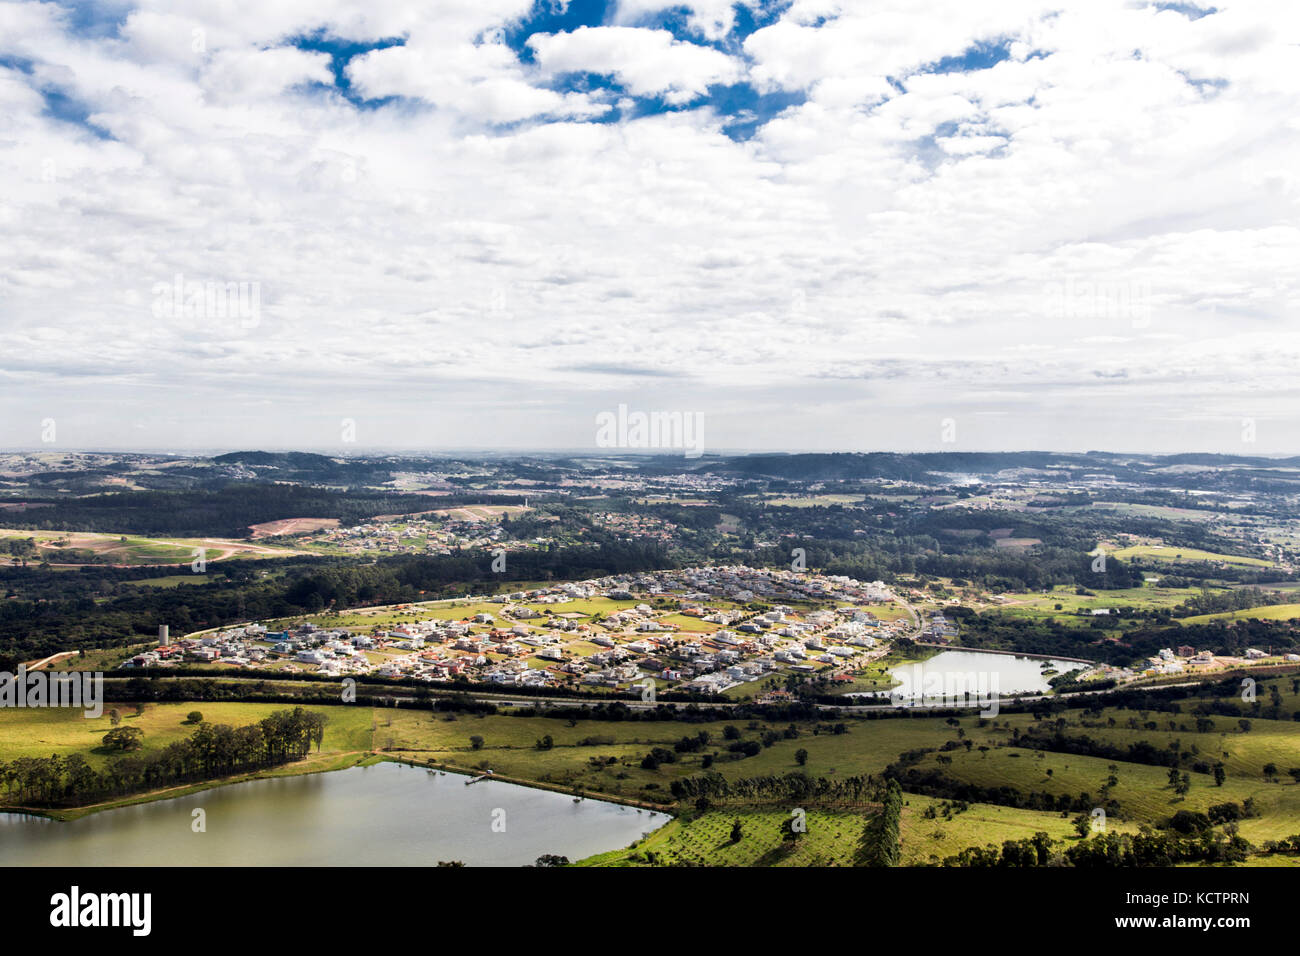 Vue aérienne de Jundiaí, ville près de São Paulo - Brésil. Maisons et bâtiments. Reserva da Serra maison de ville. Banque D'Images